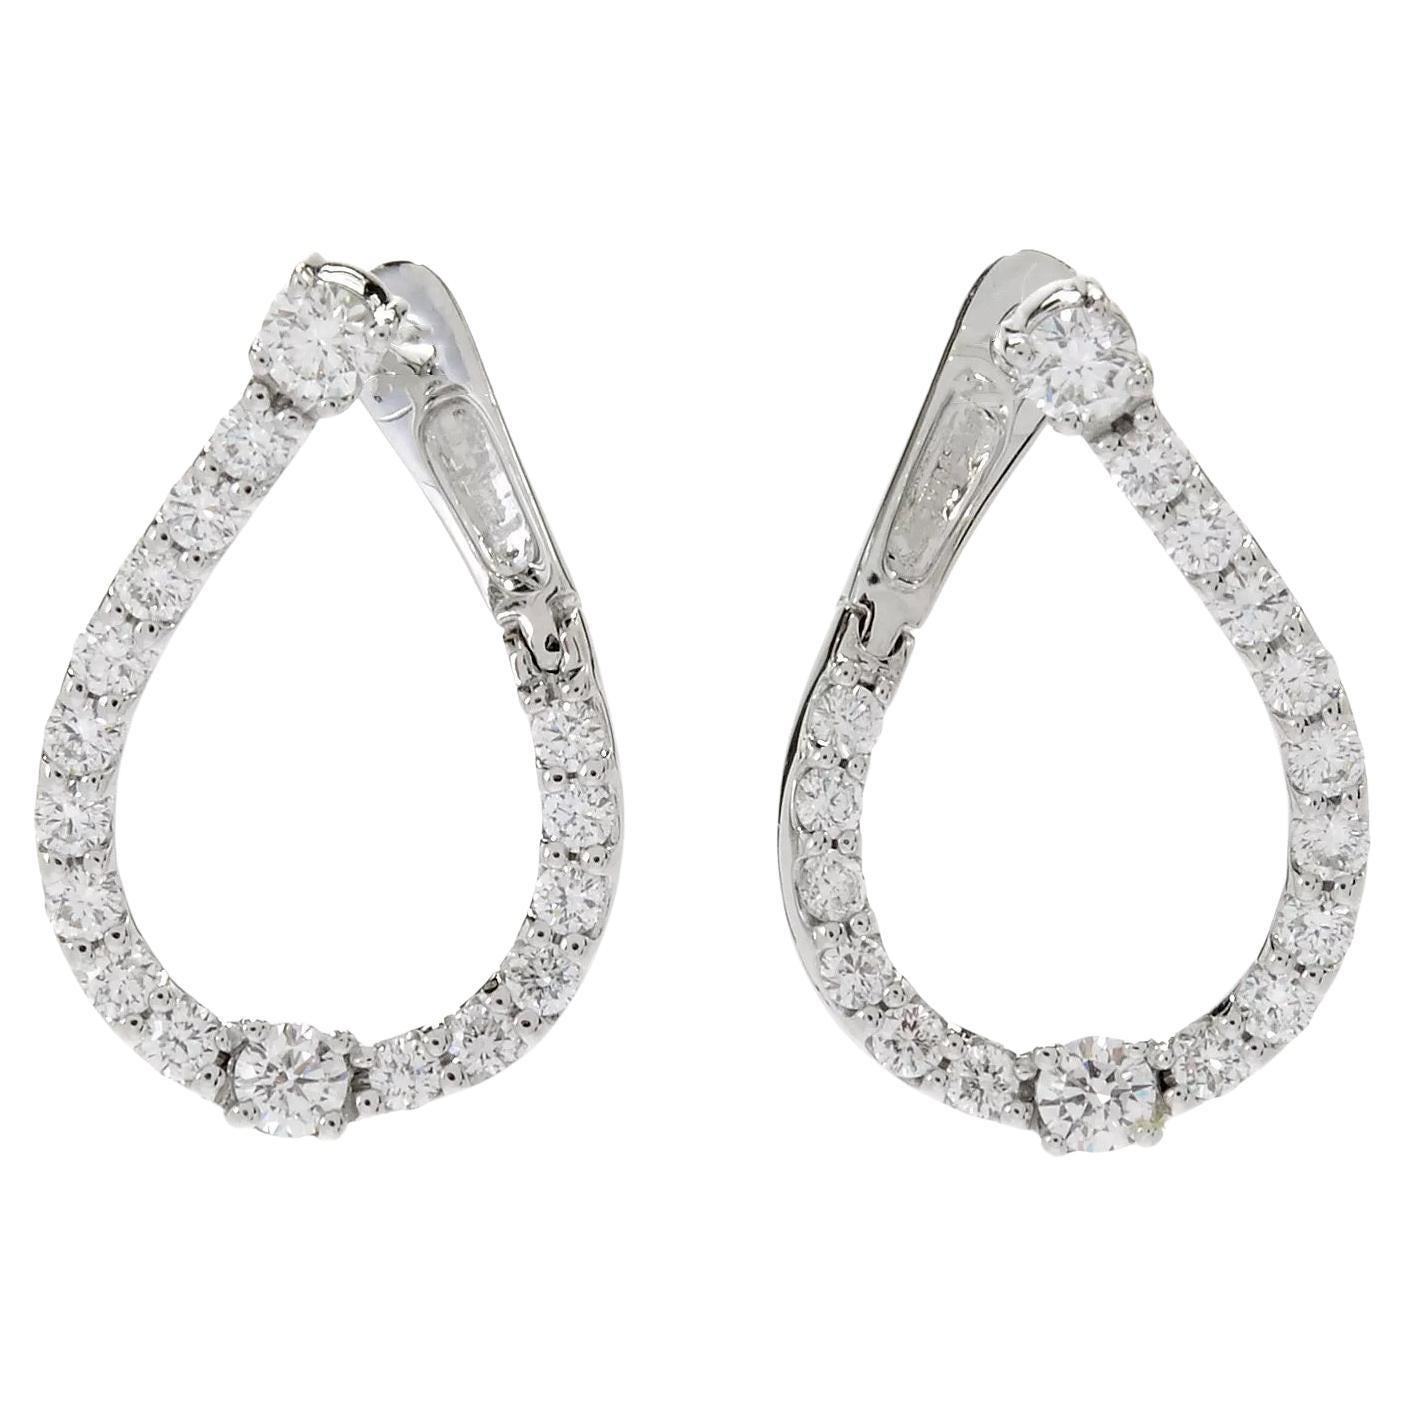  14K White gold Teardrop Silhouette Diamond Hoop Earrings 1.09ct For Sale